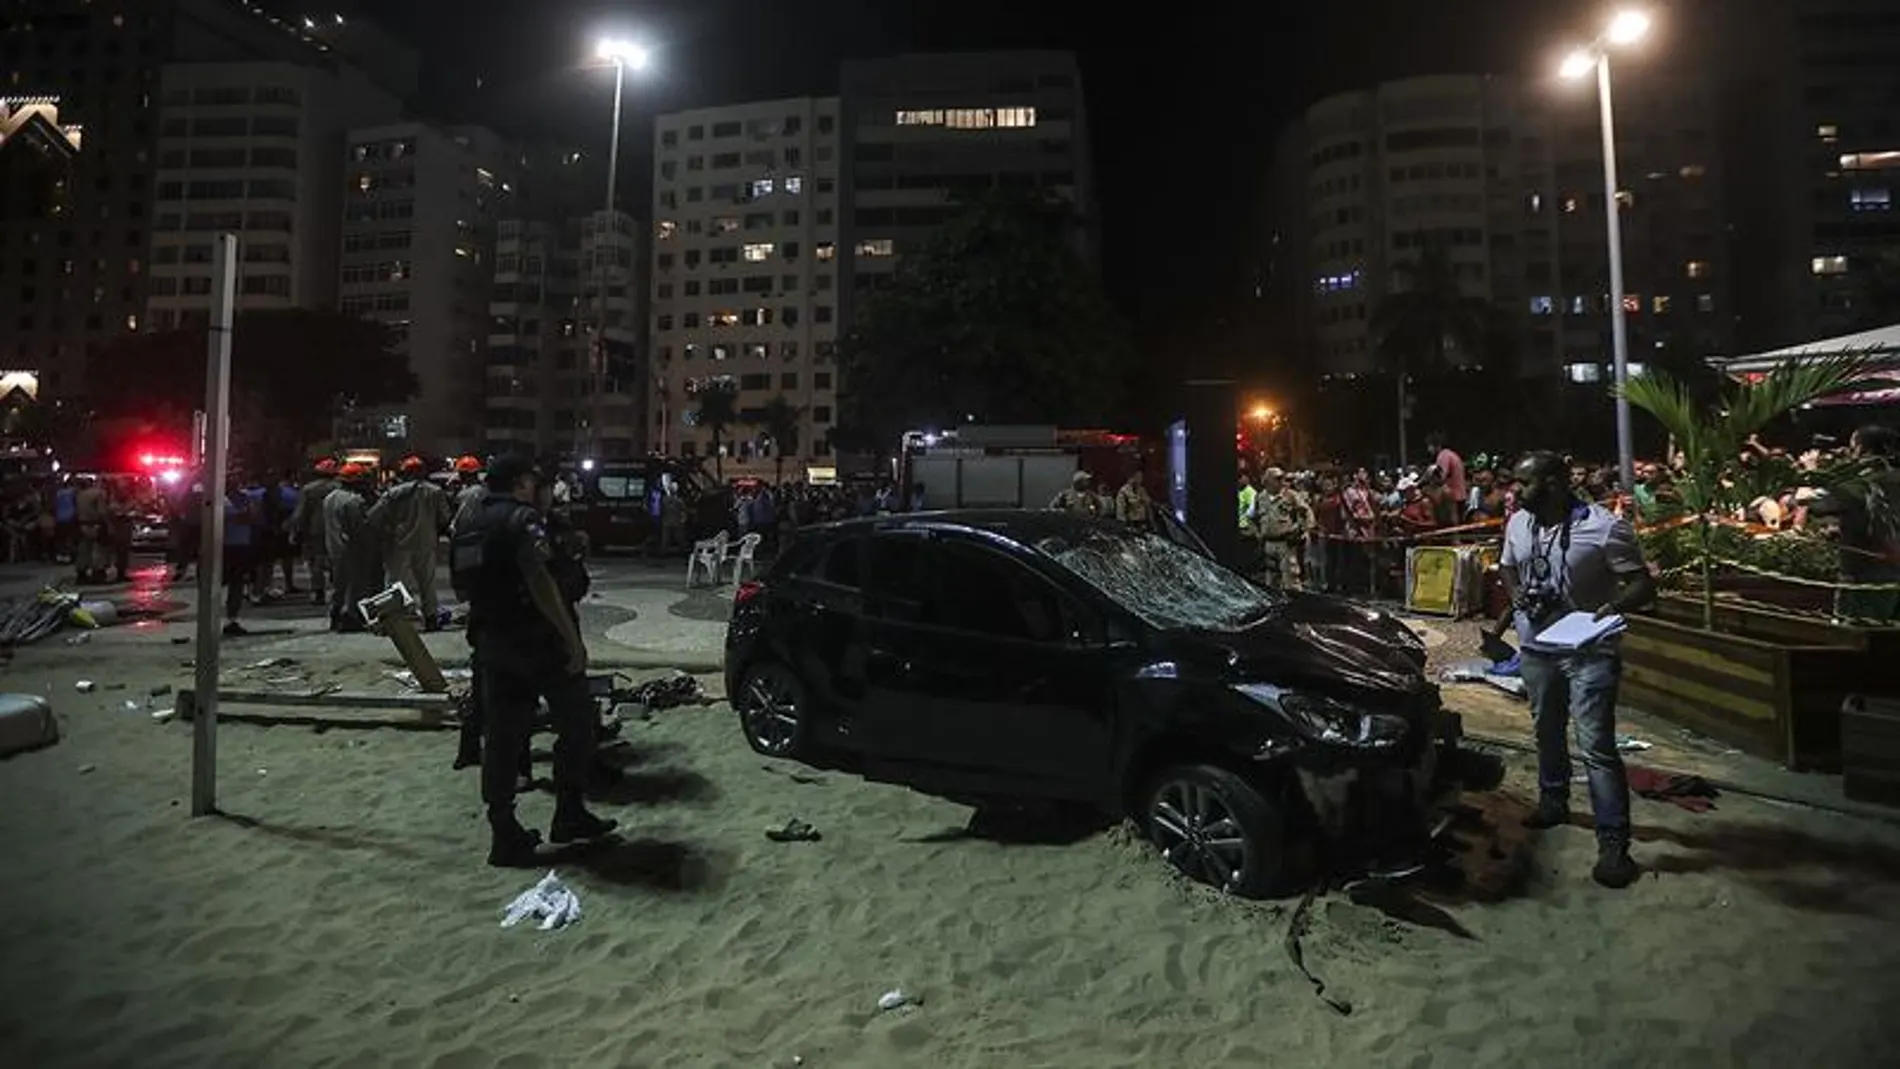 El coche que provocó el atropello múltiple en Copacabana